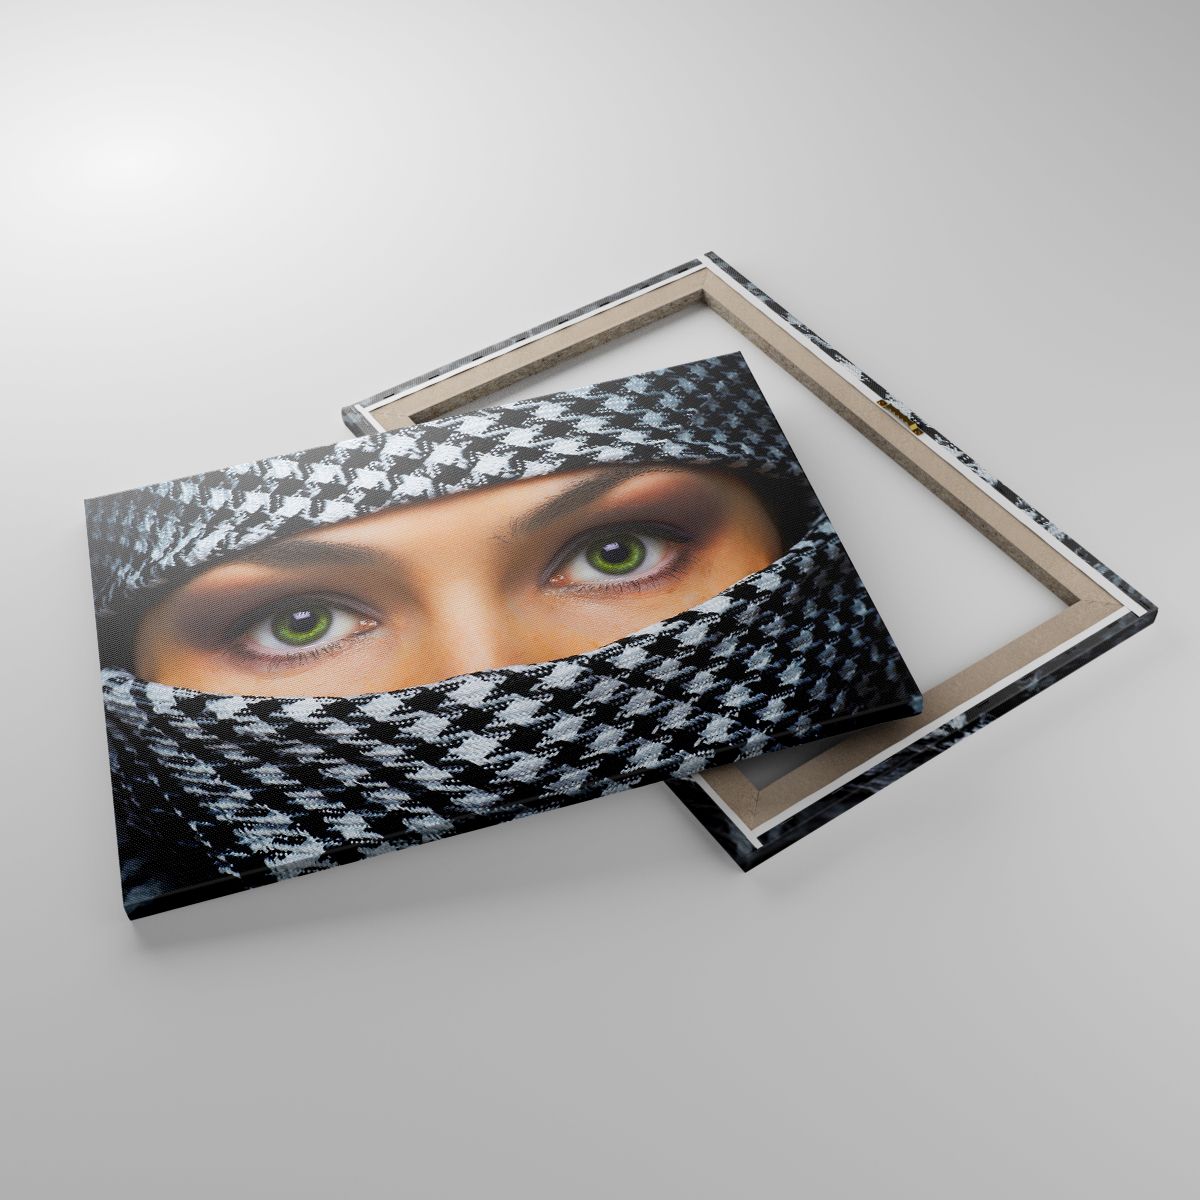 Cuadro Mujer, Cuadro Ojos, Cuadro Cultura, Cuadro Religión, Cuadro Burka Musulmán